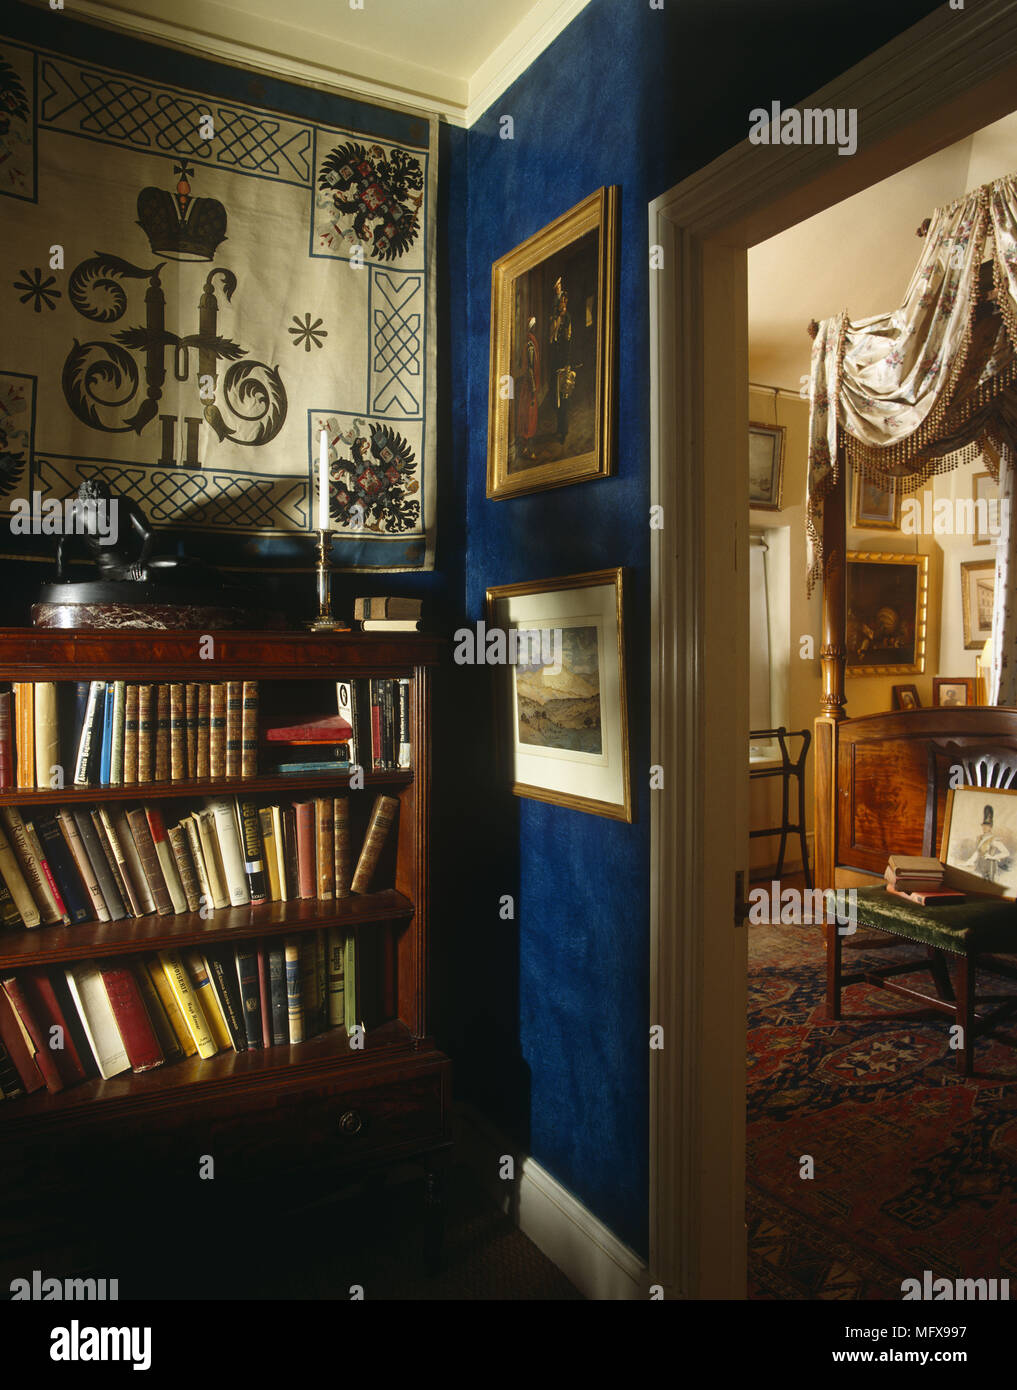 Bücherregal in Blue home Bibliothek mit Blick durch die offene Tür zum Schlafzimmer Stockfoto